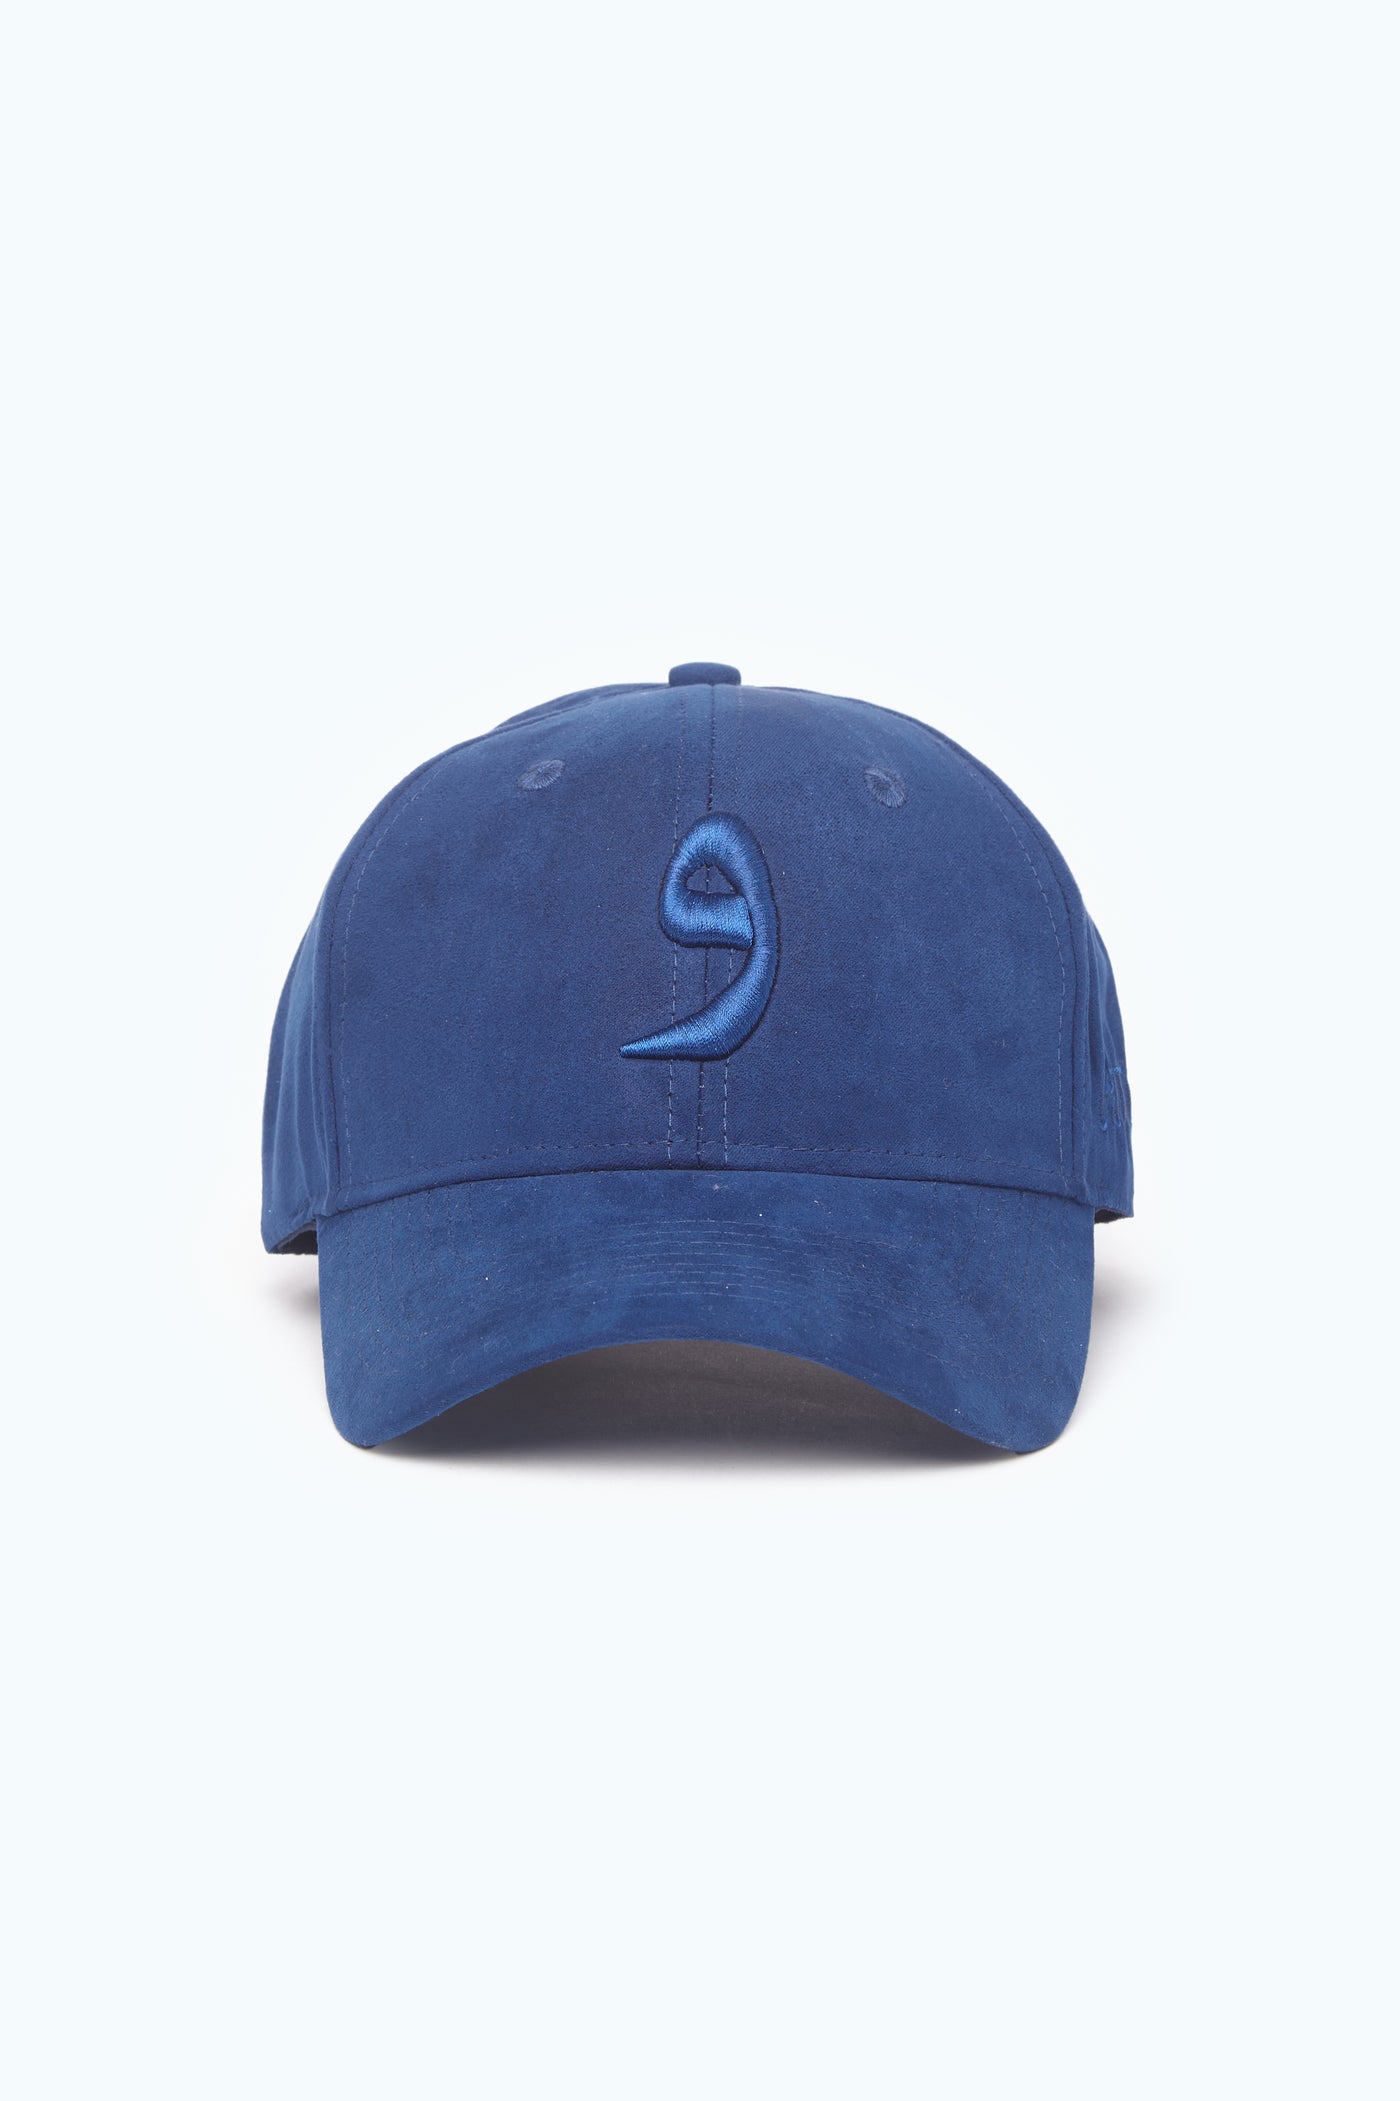 Navy Suede Arabic Cap